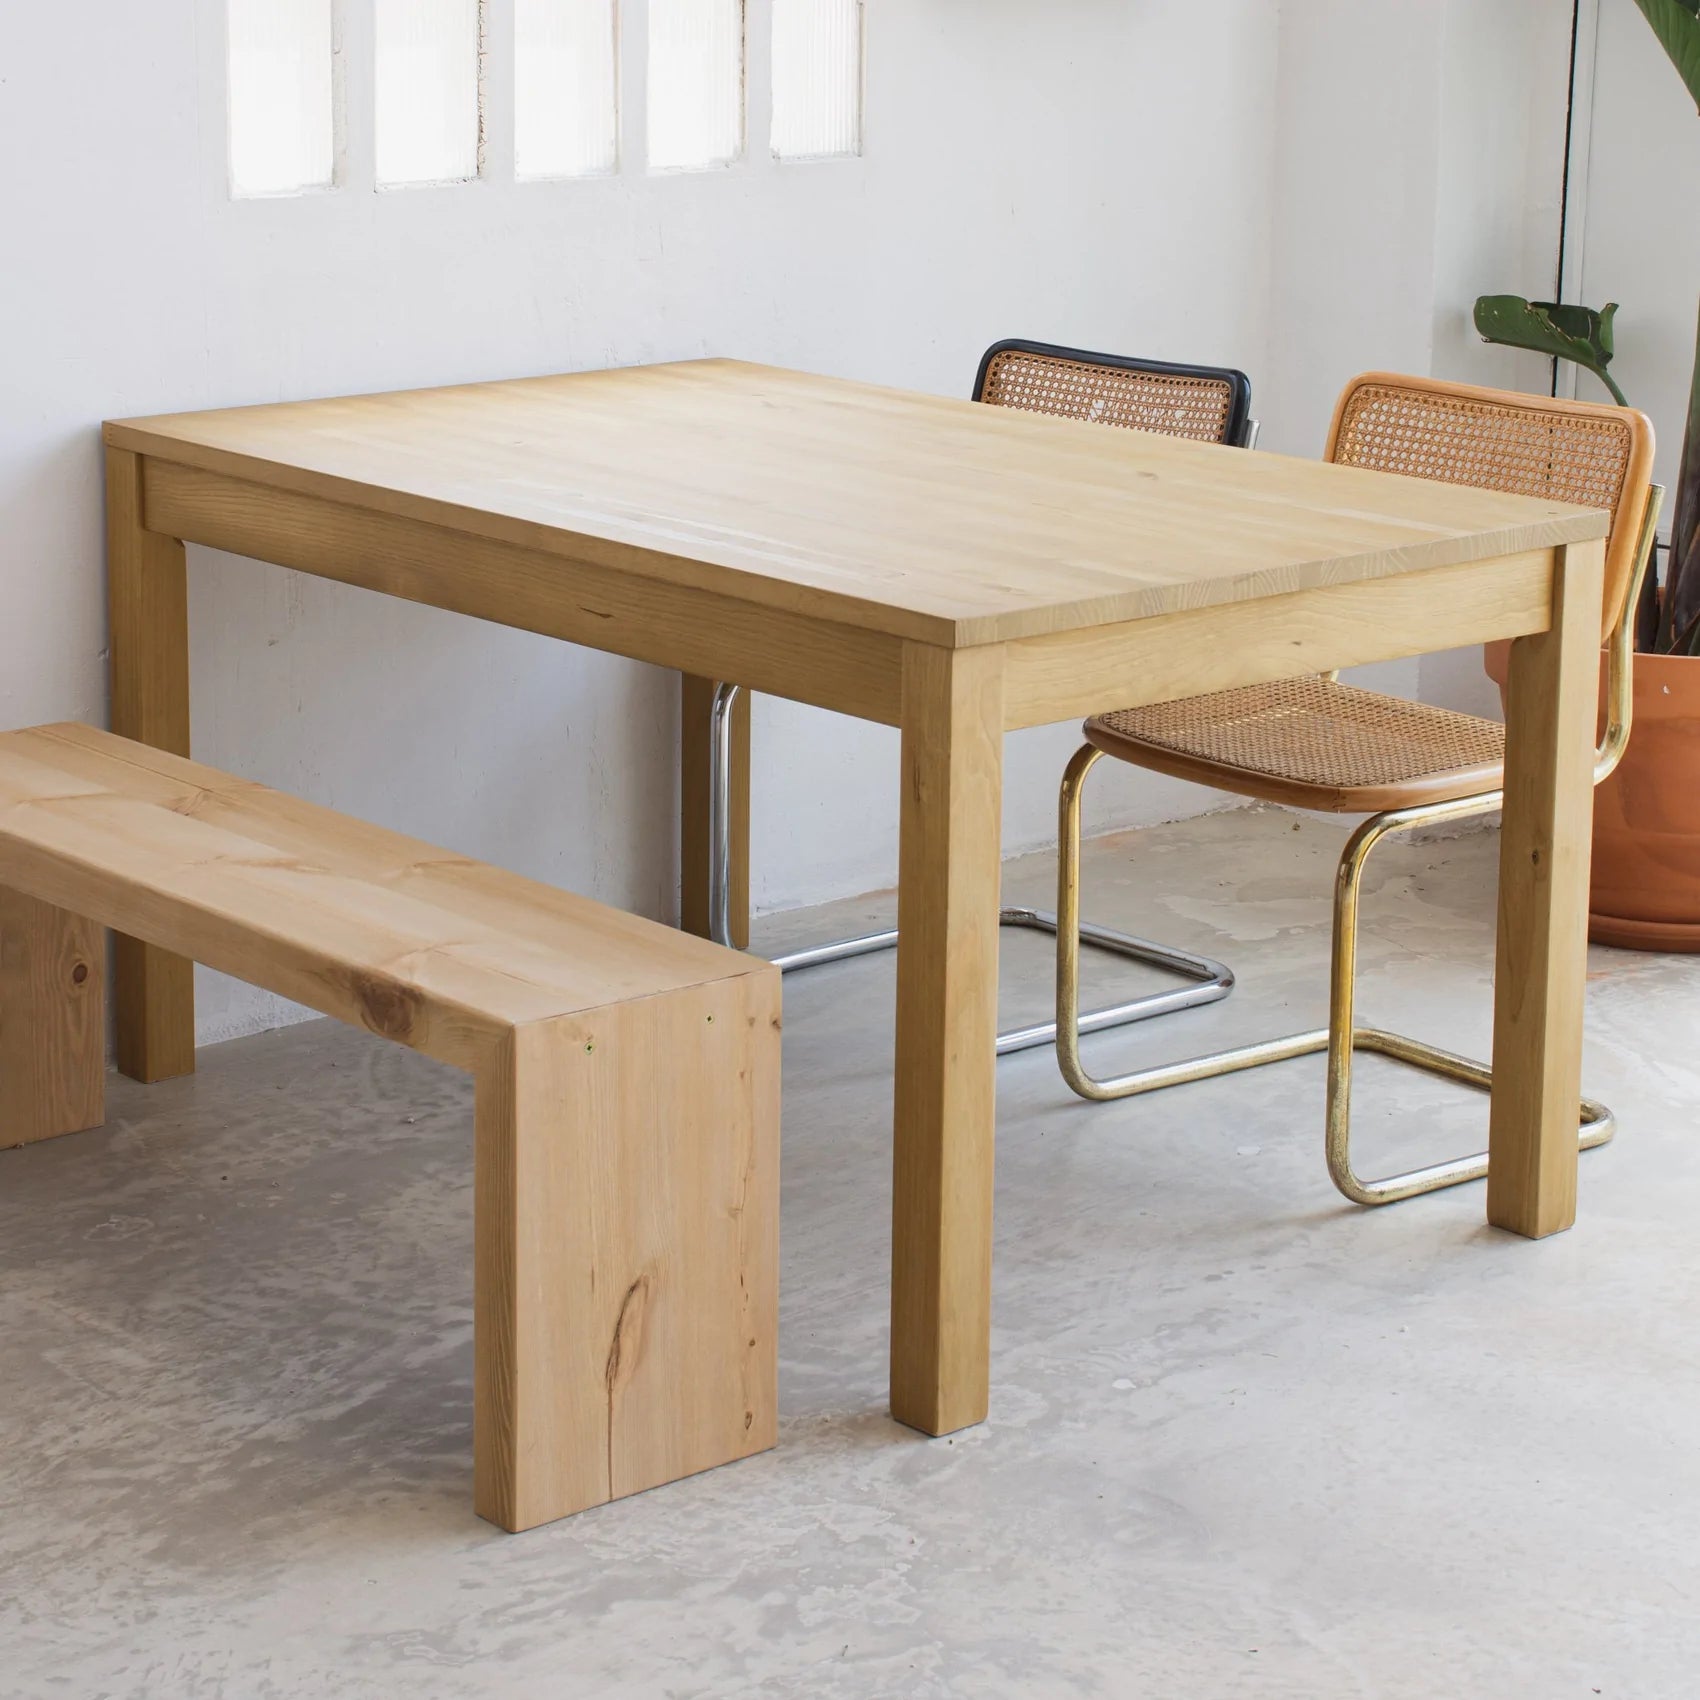 Mesa de comedor fabricada con madera maciza de pino.